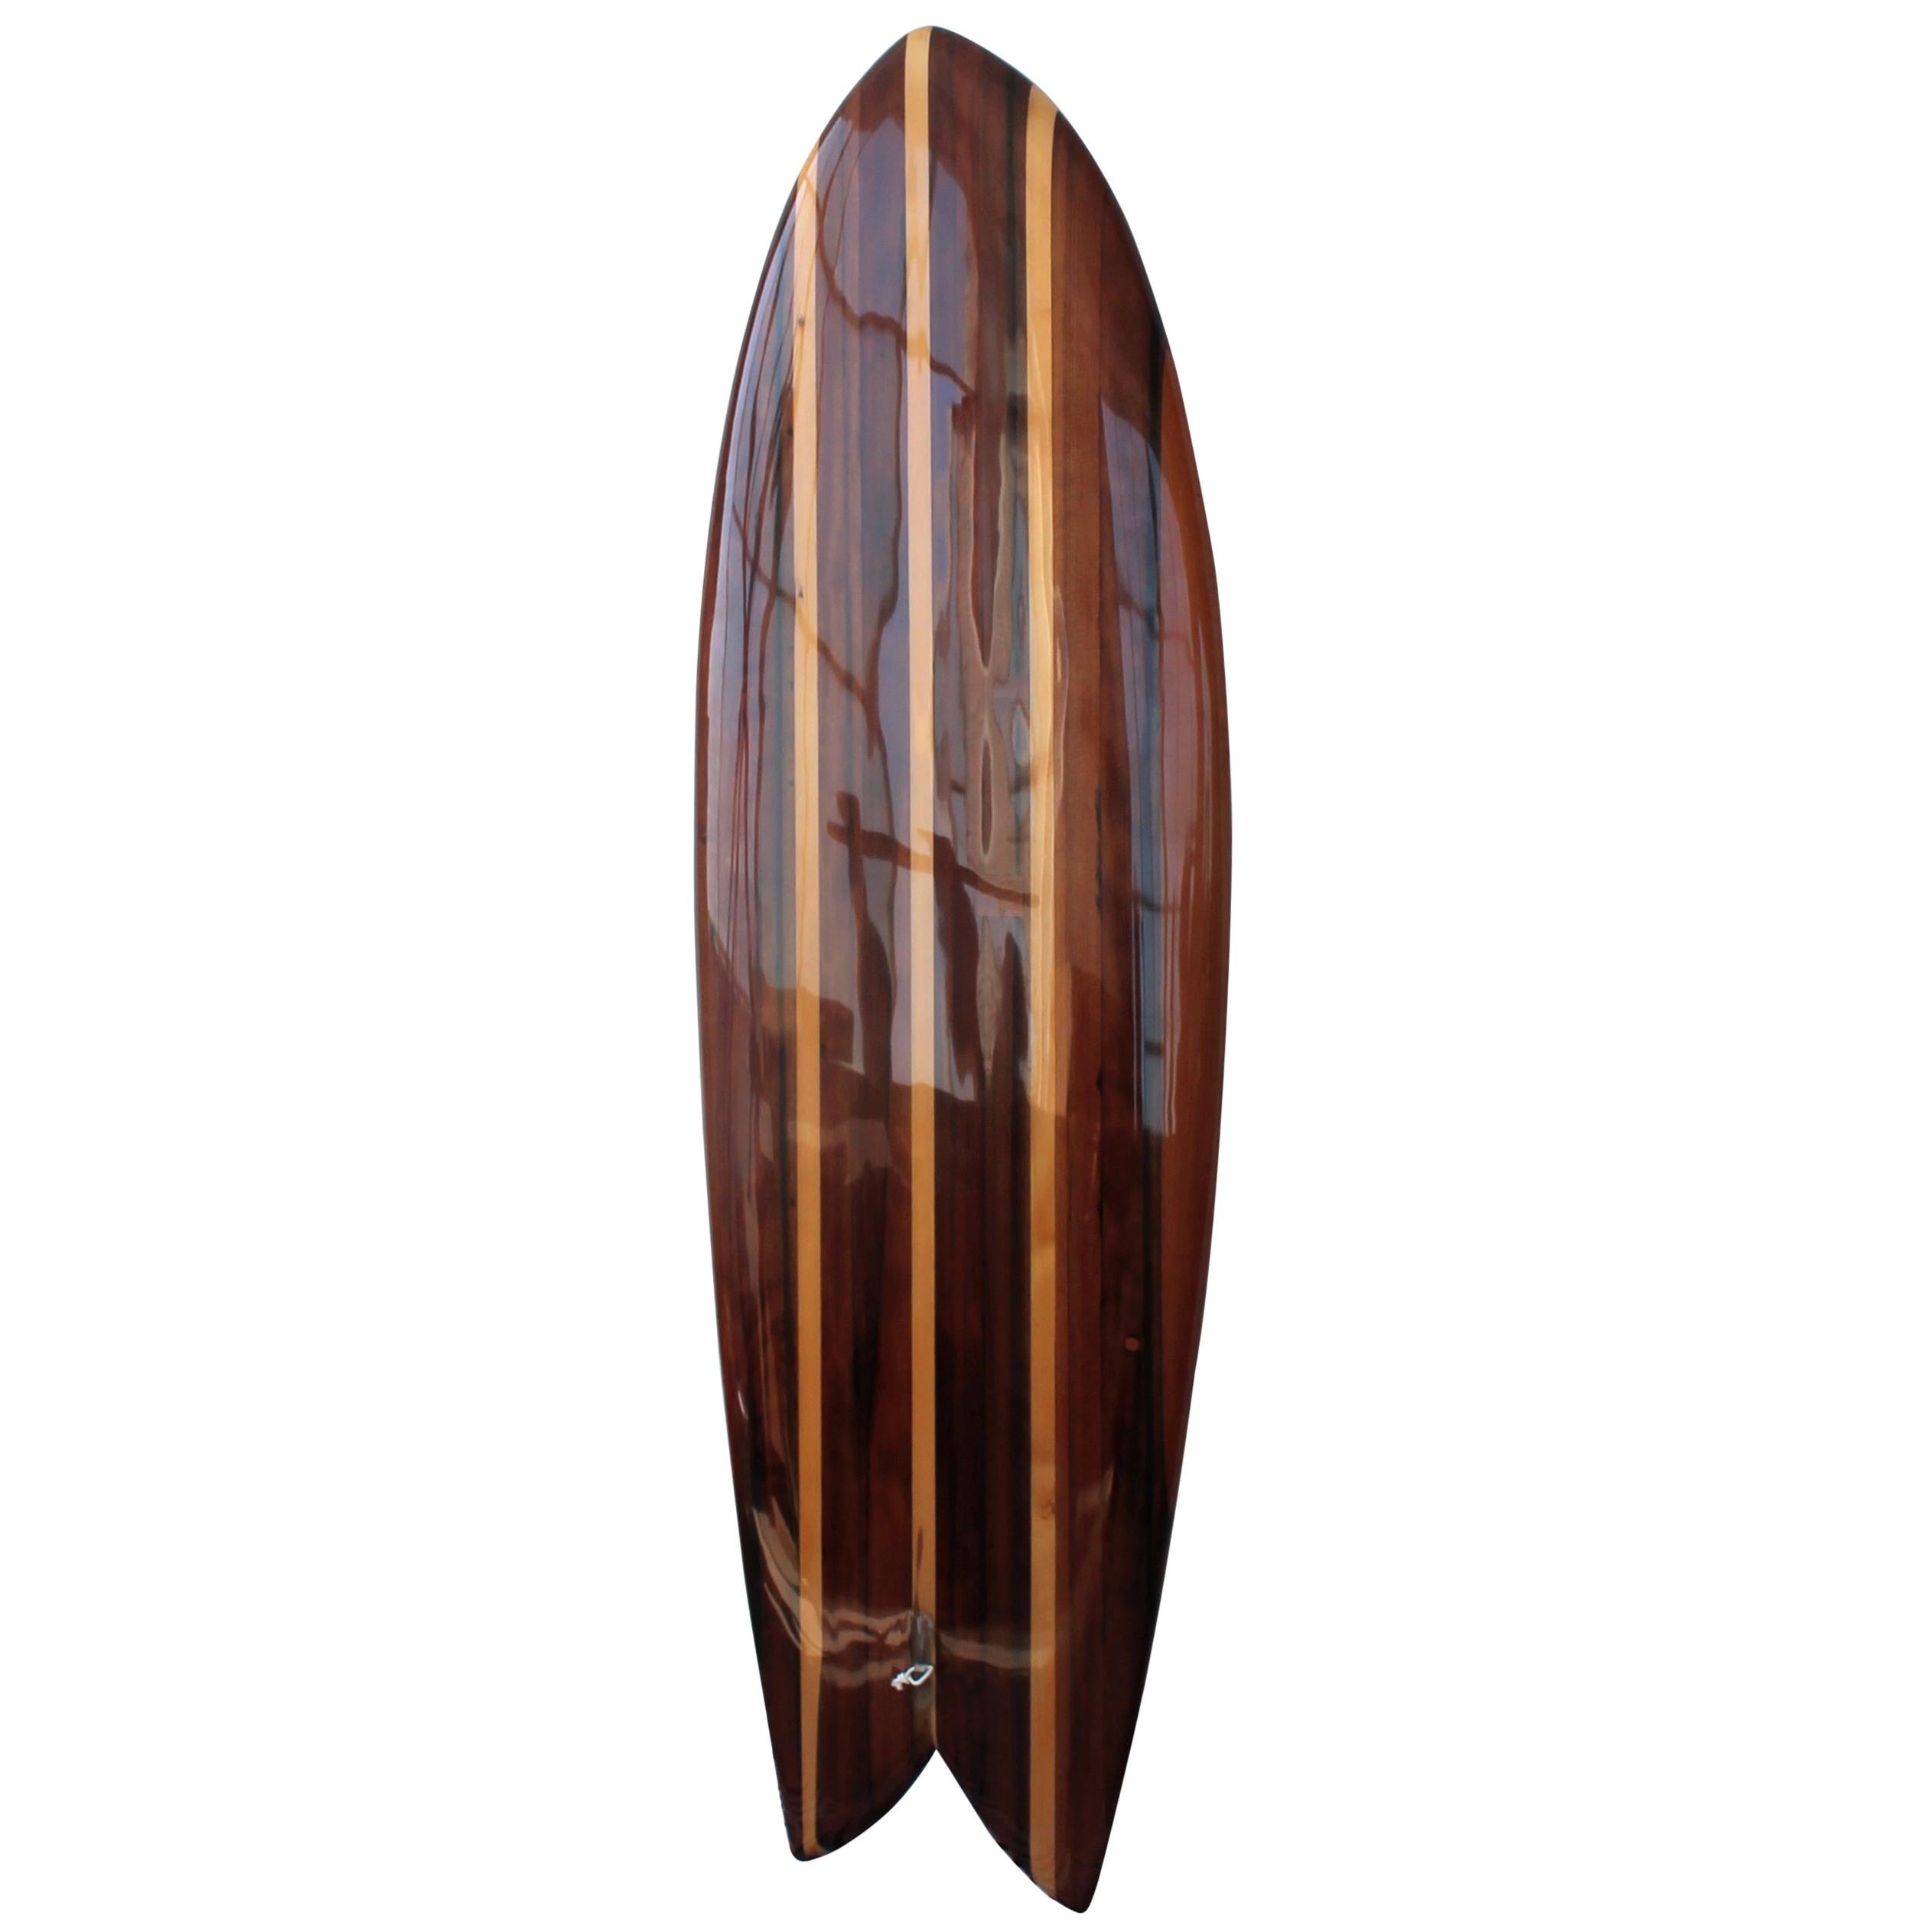 Twin Keel Surfboard in Redwood in Stock